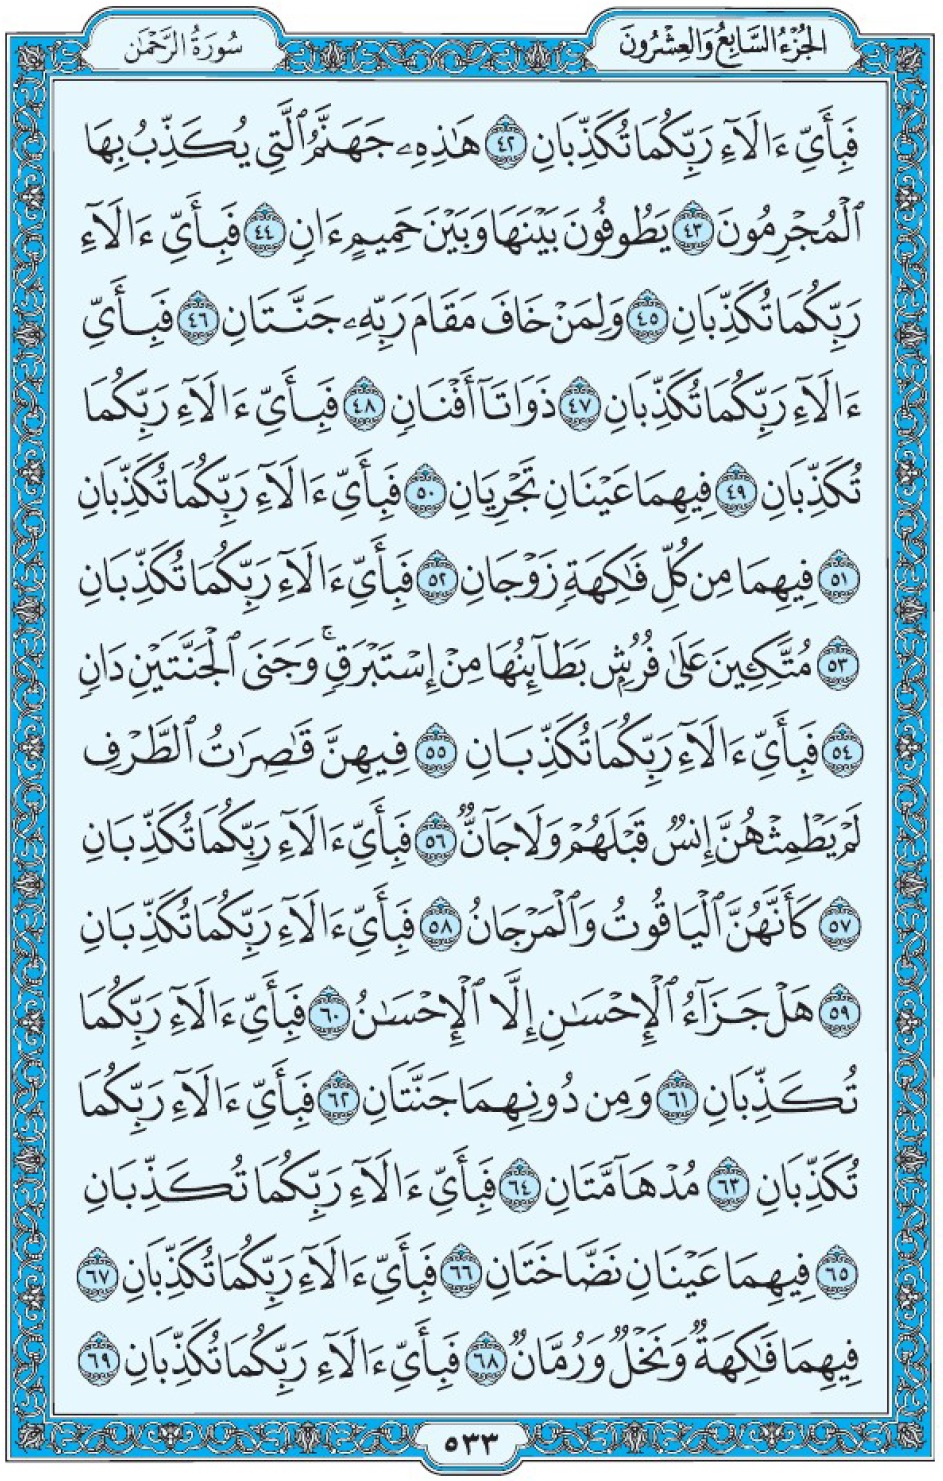 Коран Мединский мусхаф страница 533, сура ар-Рахман, аят 42-69